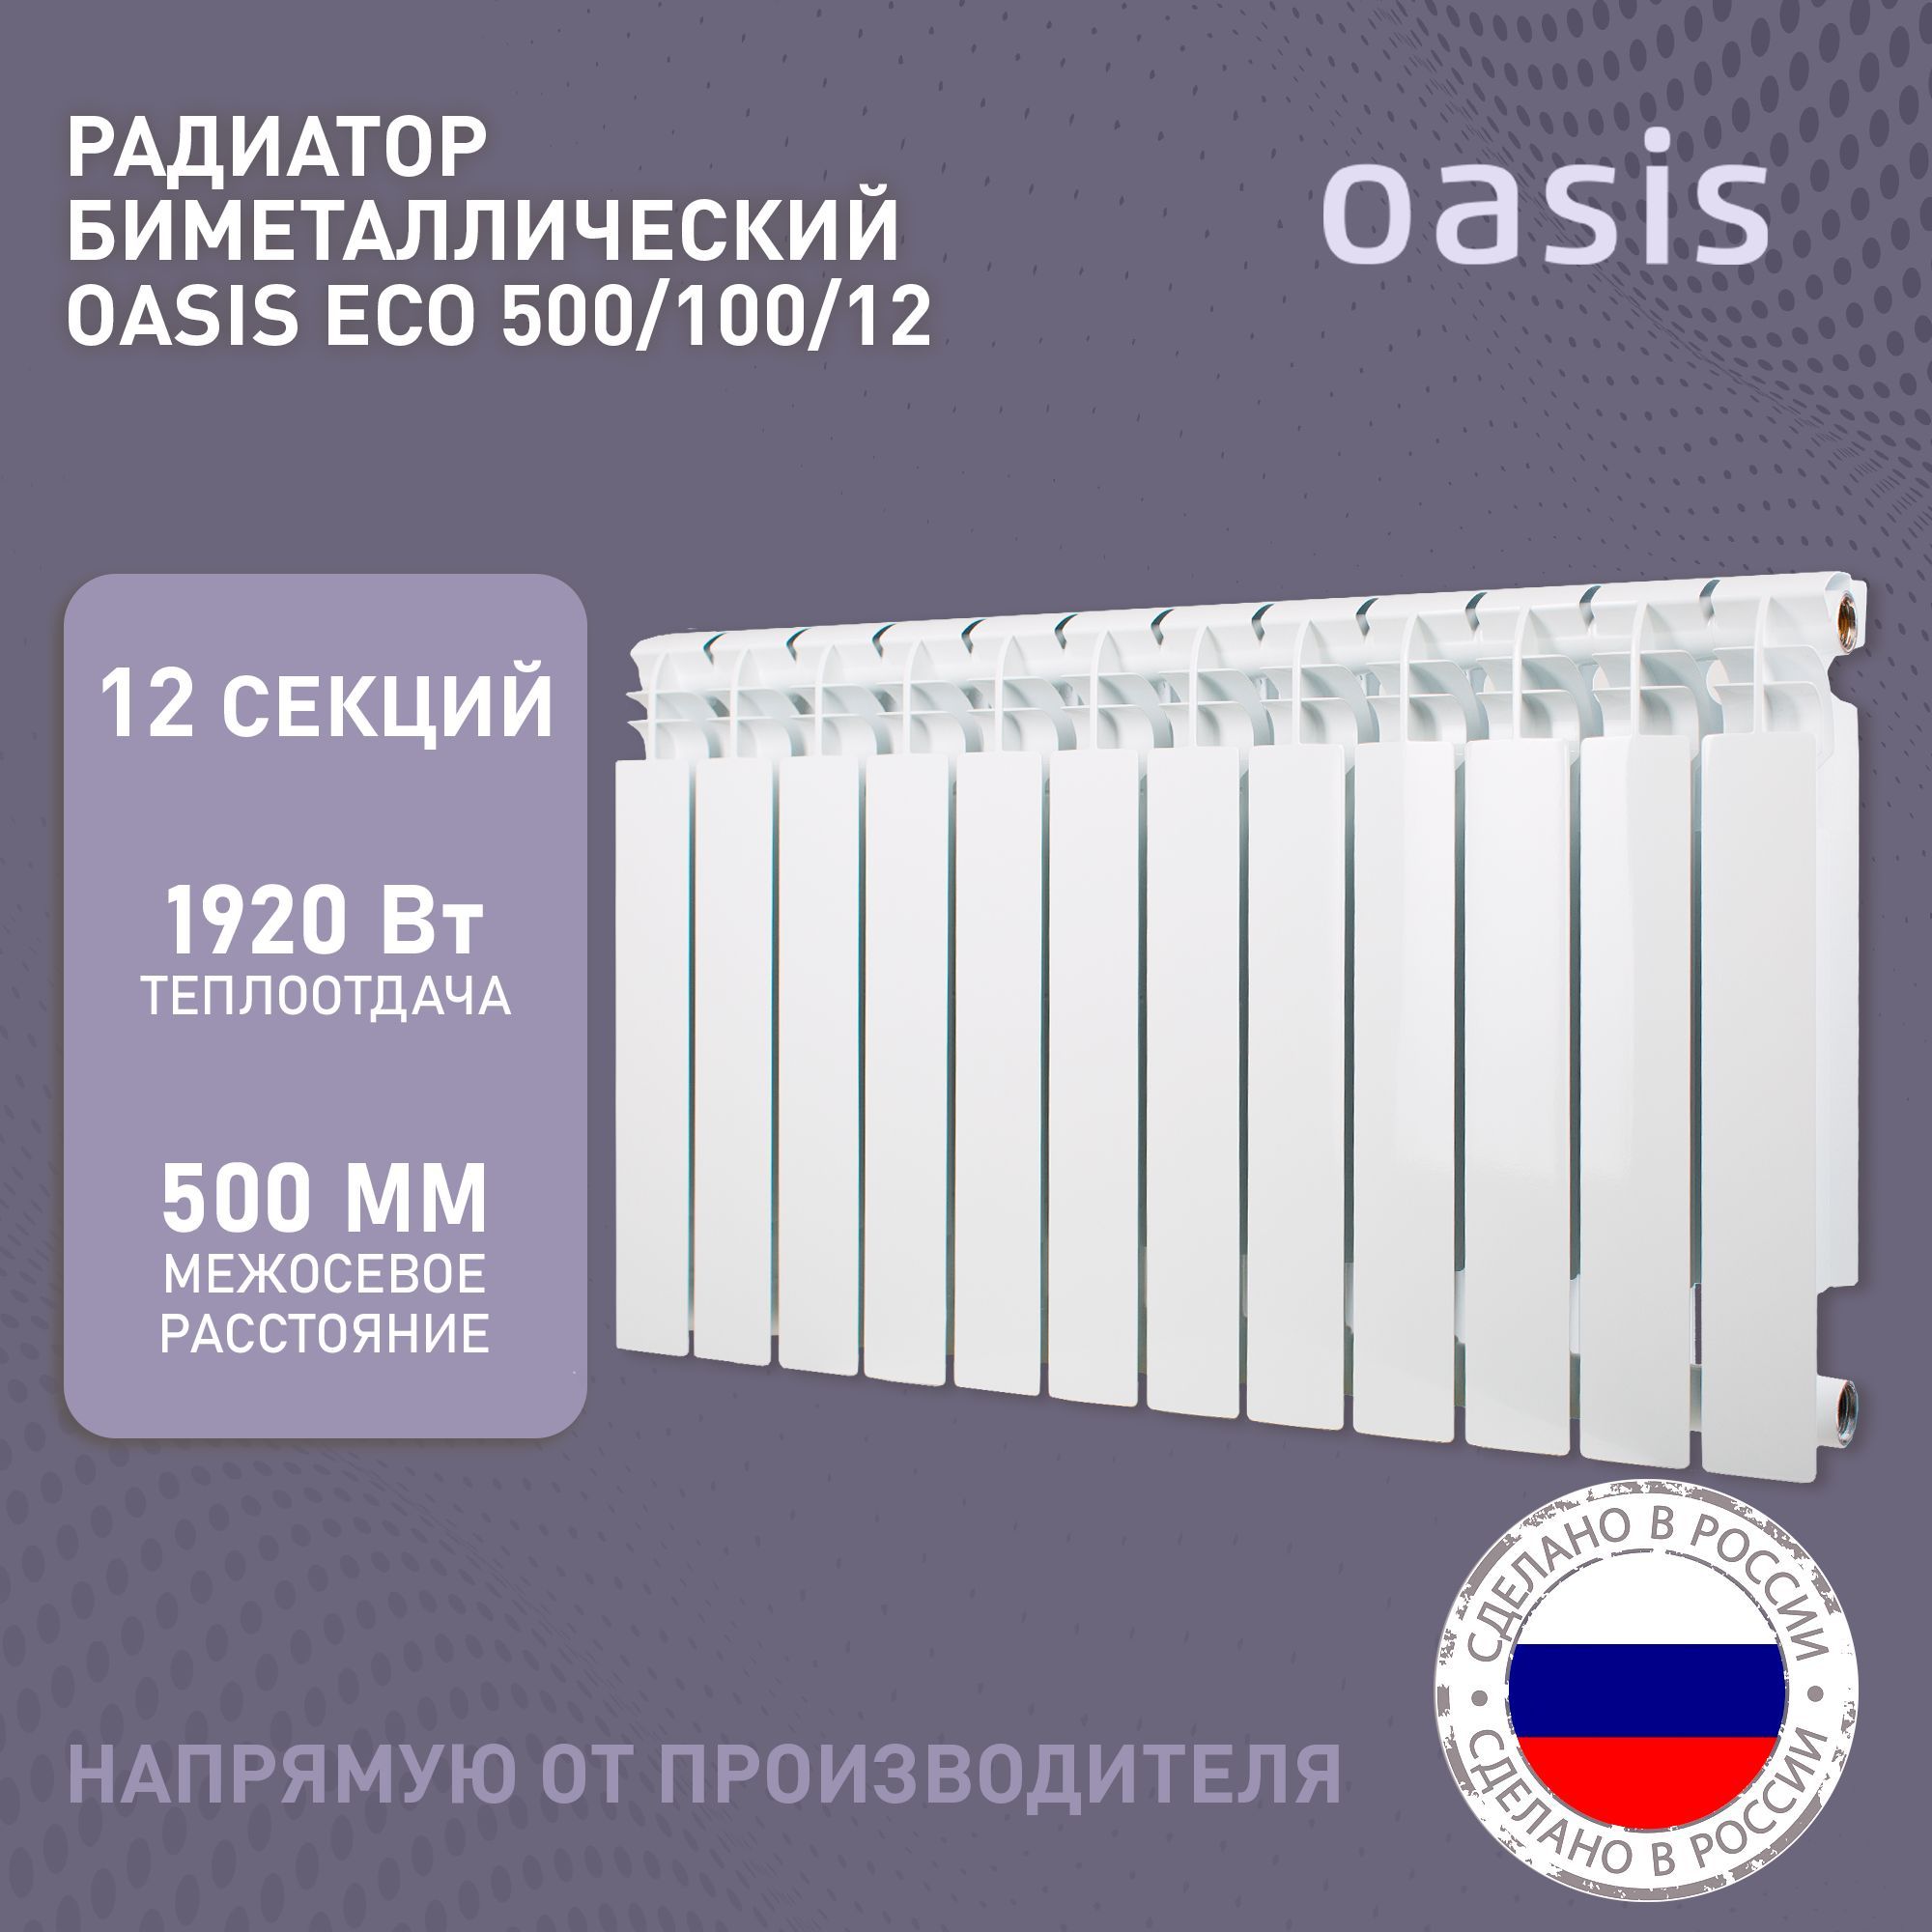 РадиаторотоплениябиметаллическиеOasisEco,модель500/100/12,12секций/батарея